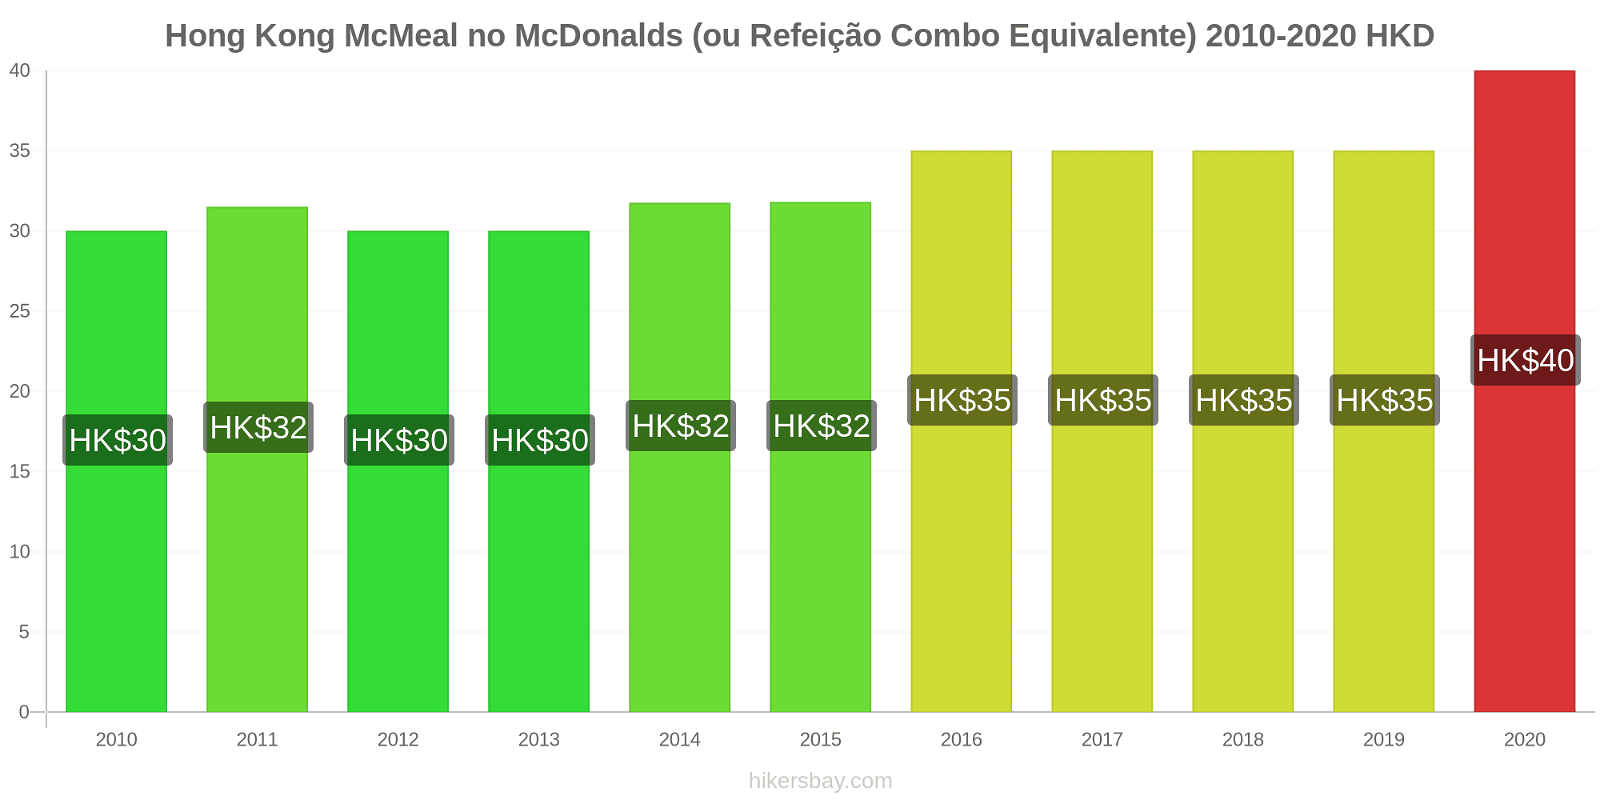 Hong Kong variação de preço McMeal no McDonald ' s (ou refeição Combo equivalente) hikersbay.com